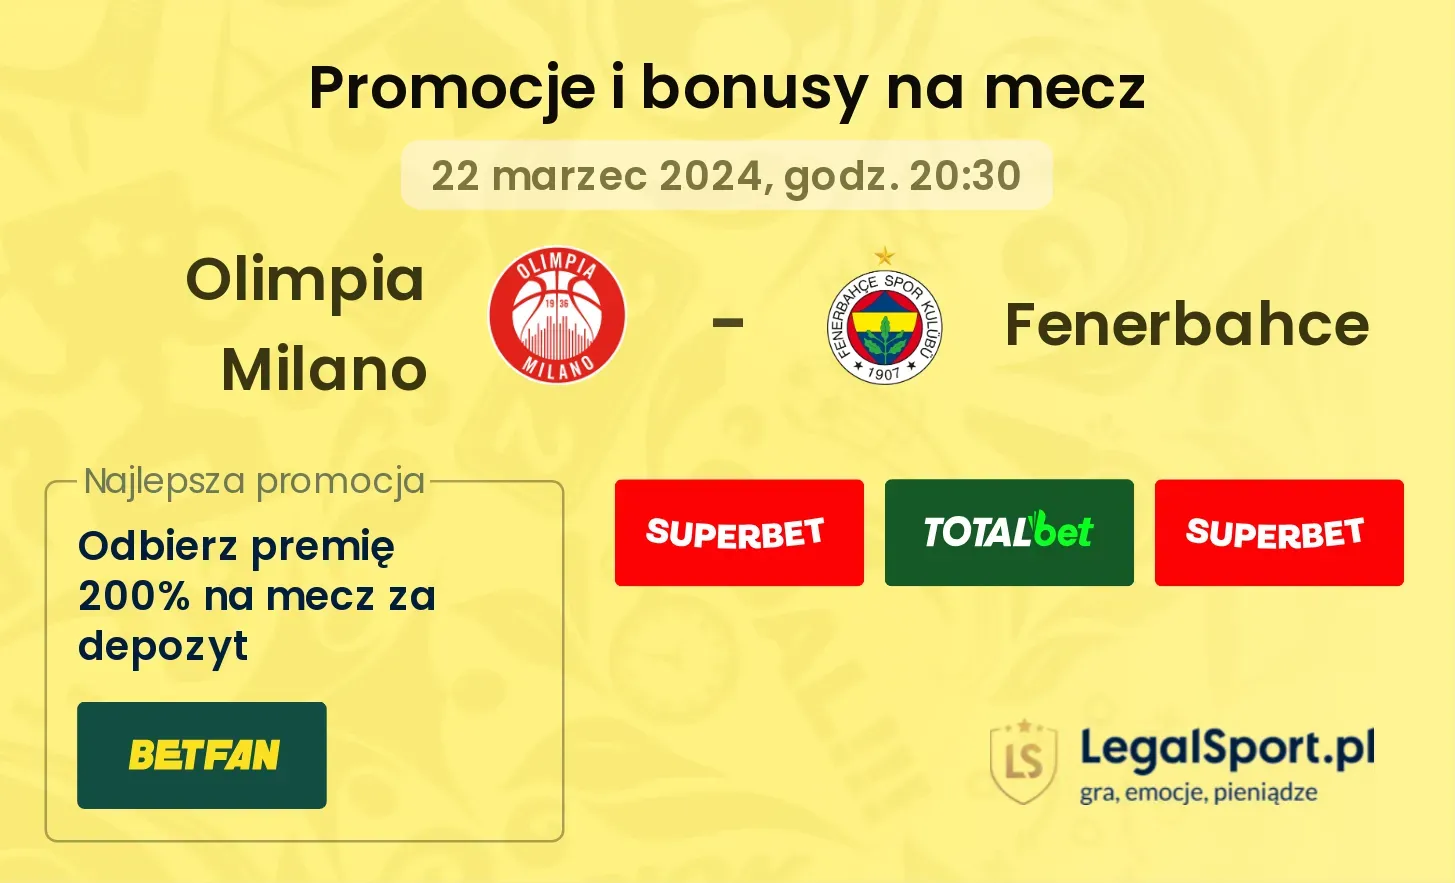 Olimpia Milano - Fenerbahce promocje bonusy na mecz